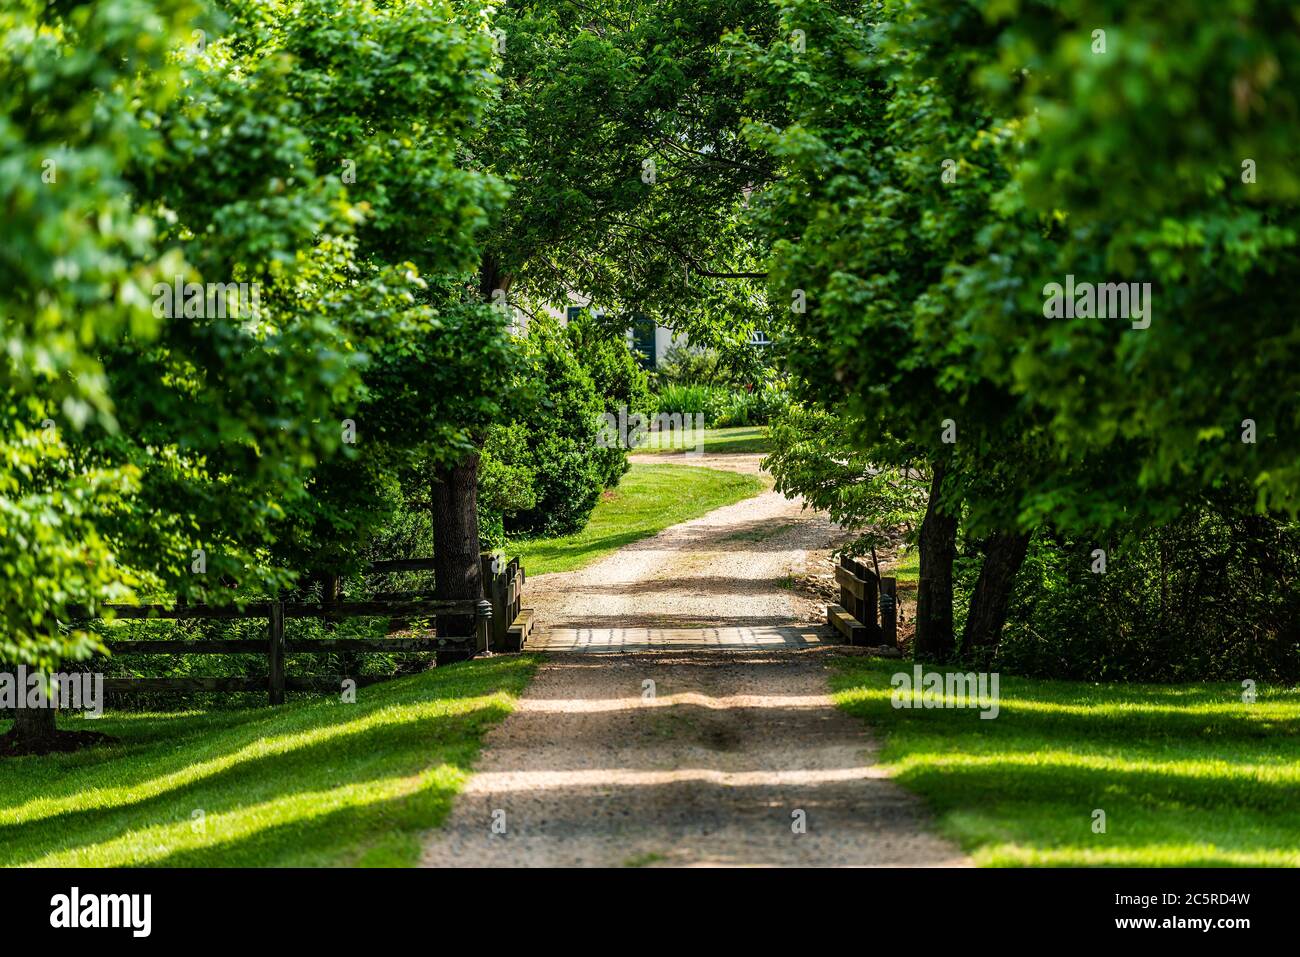 Entrée ouverte avec pont sur la rivière avec allée dans la campagne rurale dans Virginia Estate chemin de terre de gravier rue avec arbres verts luxuriants dedans Banque D'Images